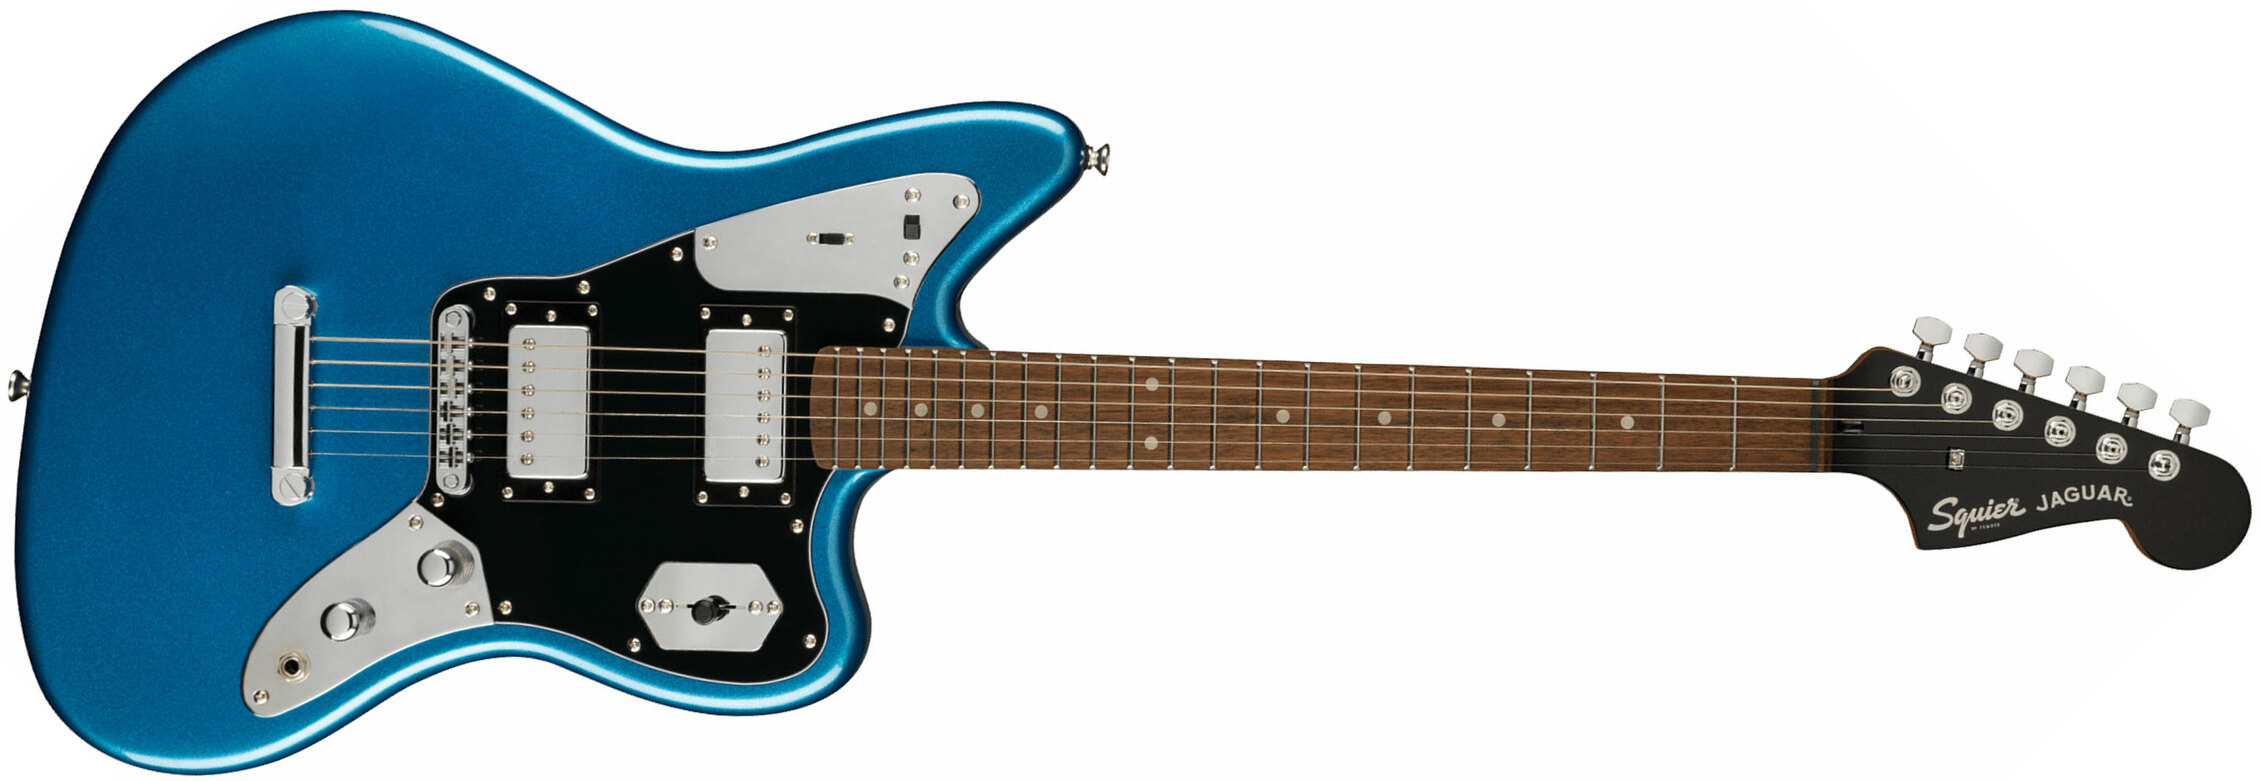 Squier Jaguar Contemporary Hh St Fsr Ltd Ht Lau - Lake Placid Blue - Retro rock electric guitar - Main picture